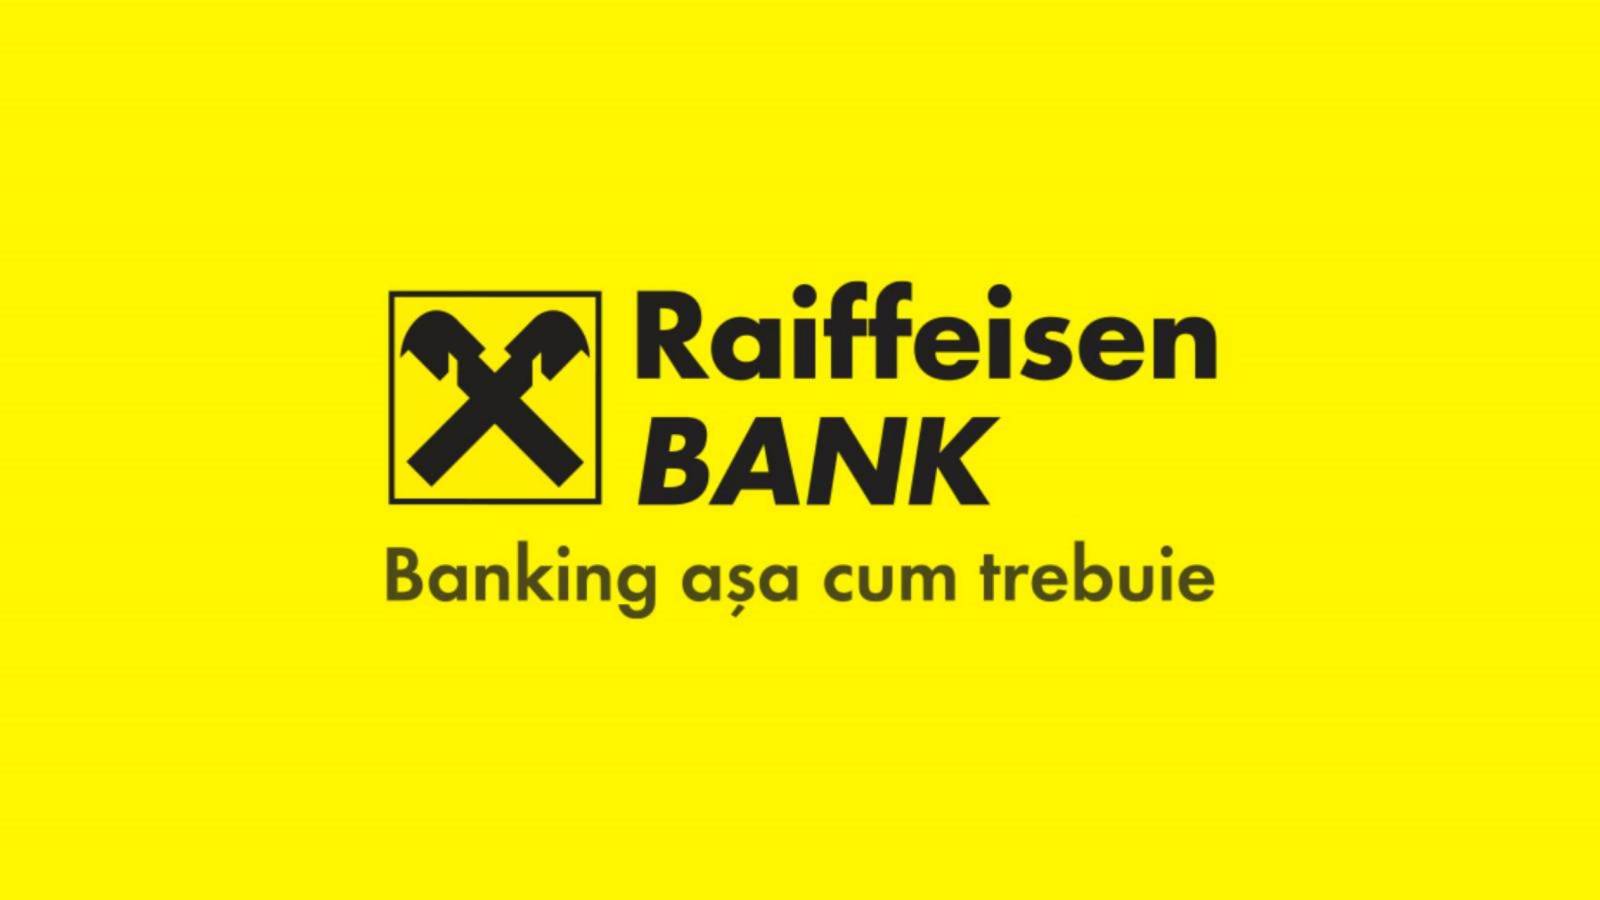 Autoryzacje Raiffeisen Banku